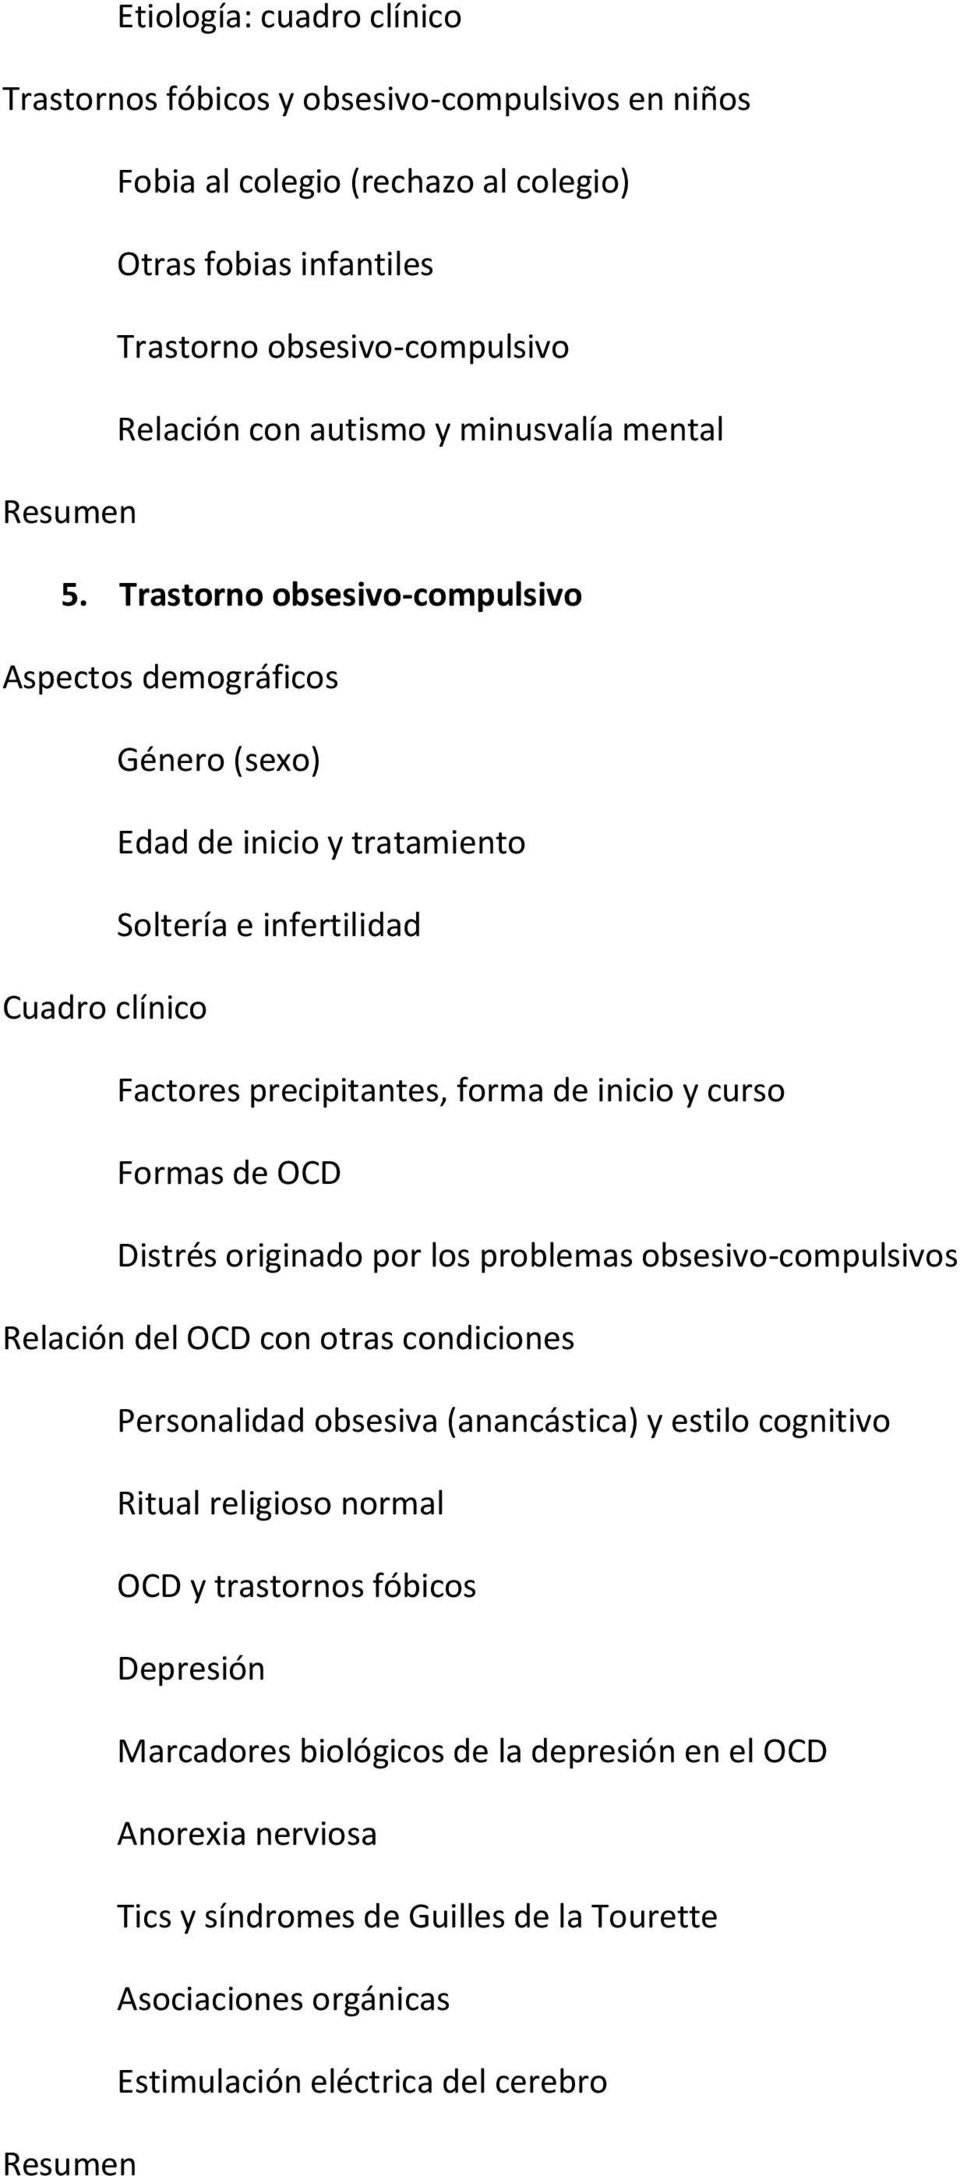 Trastorno obsesivo-compulsivo Aspectos demográficos Género (sexo) Edad de inicio y tratamiento Soltería e infertilidad Cuadro clínico Factores precipitantes, forma de inicio y curso Formas de OCD